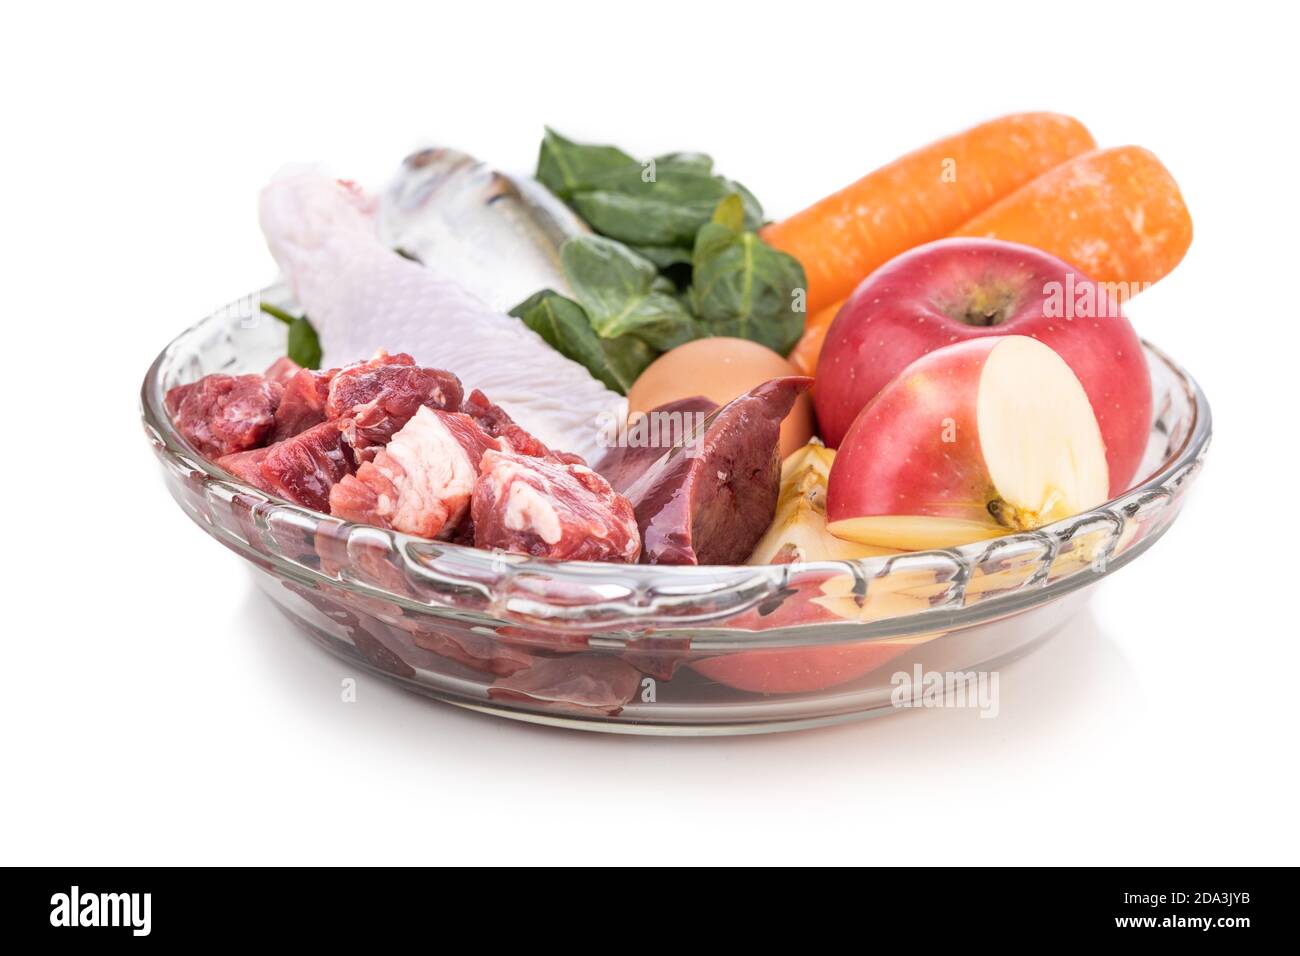 Ingrédients de la recette de nourriture brute de barf pour les chiens composés de viande, d'organes, de poisson, d'oeufs et de légumes sur fond blanc Banque D'Images